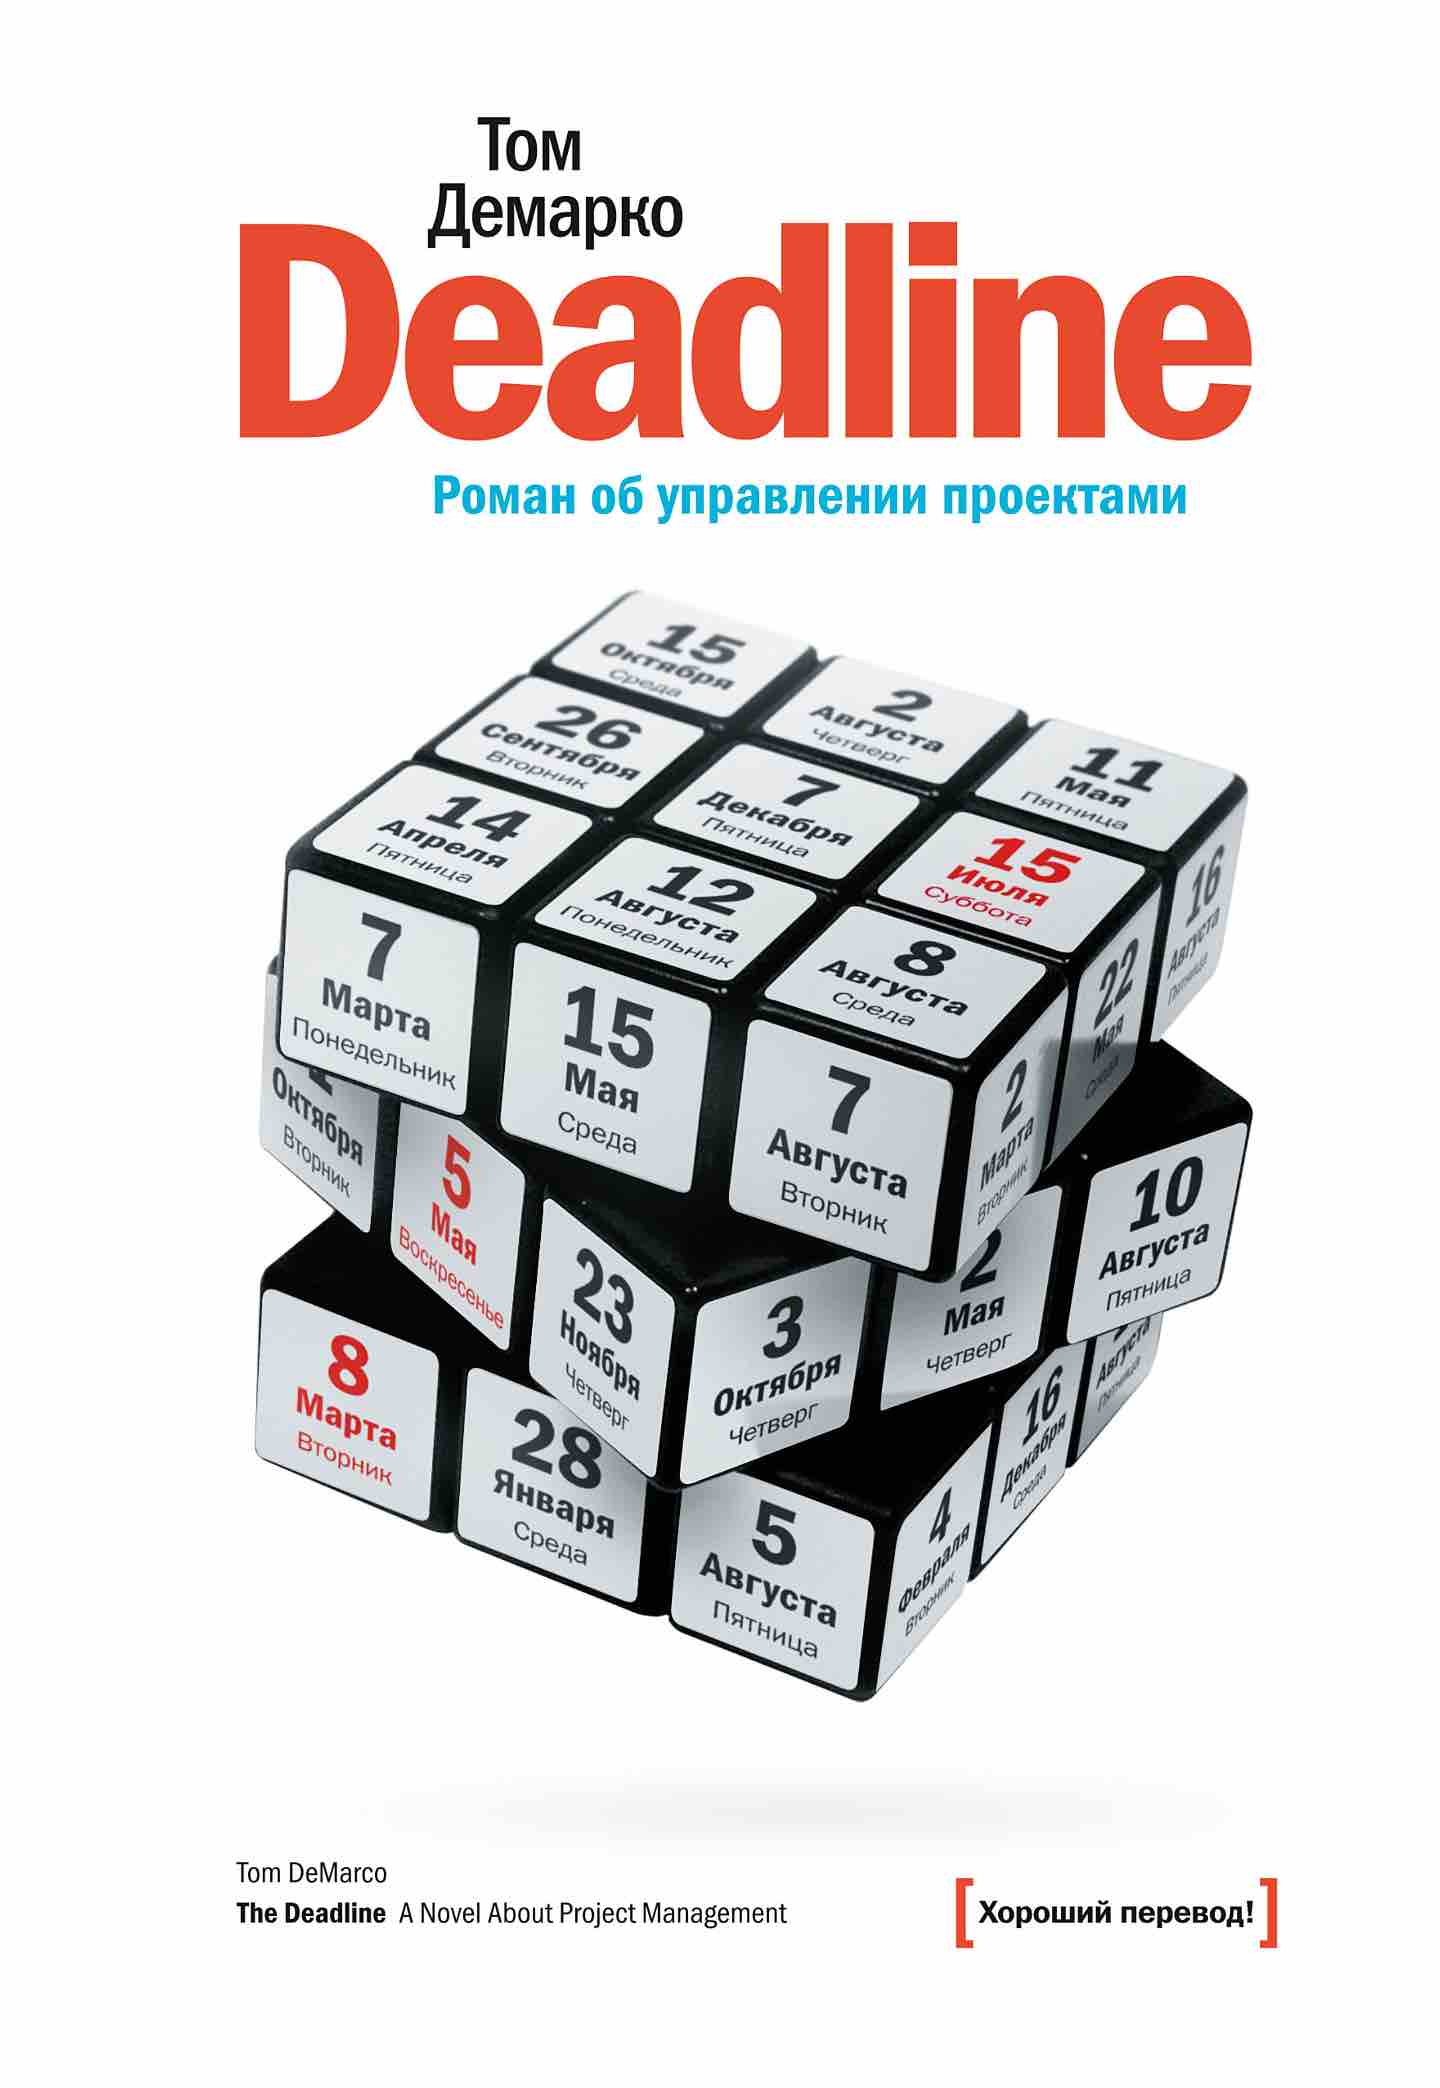 Обзор книги «Deadline. Роман об управлении проектами», автор Том Демарко.